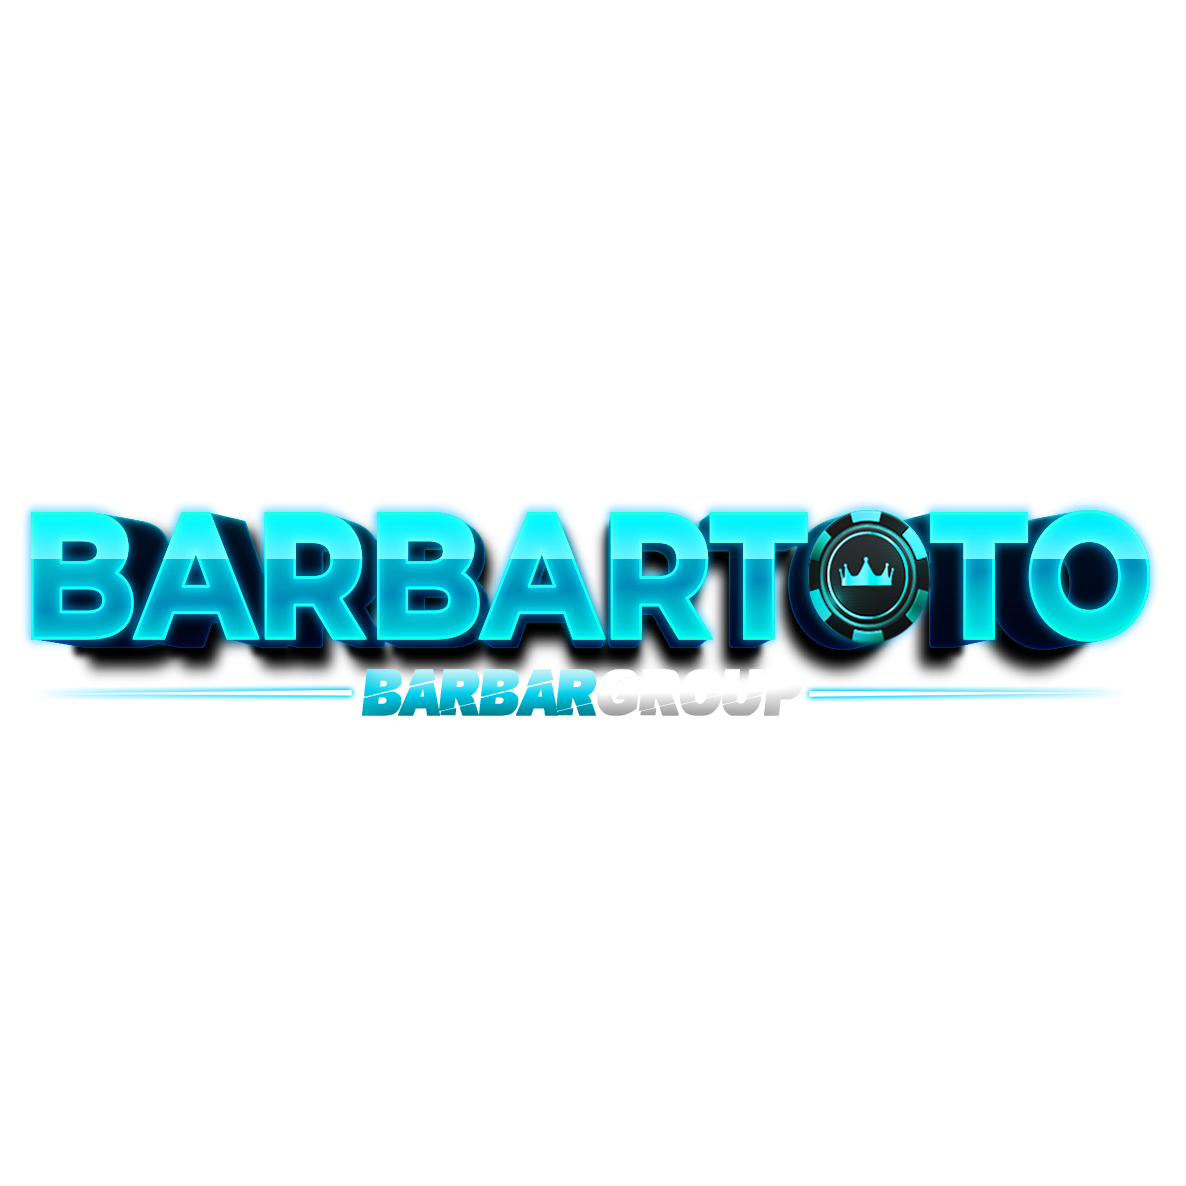 barbartoto